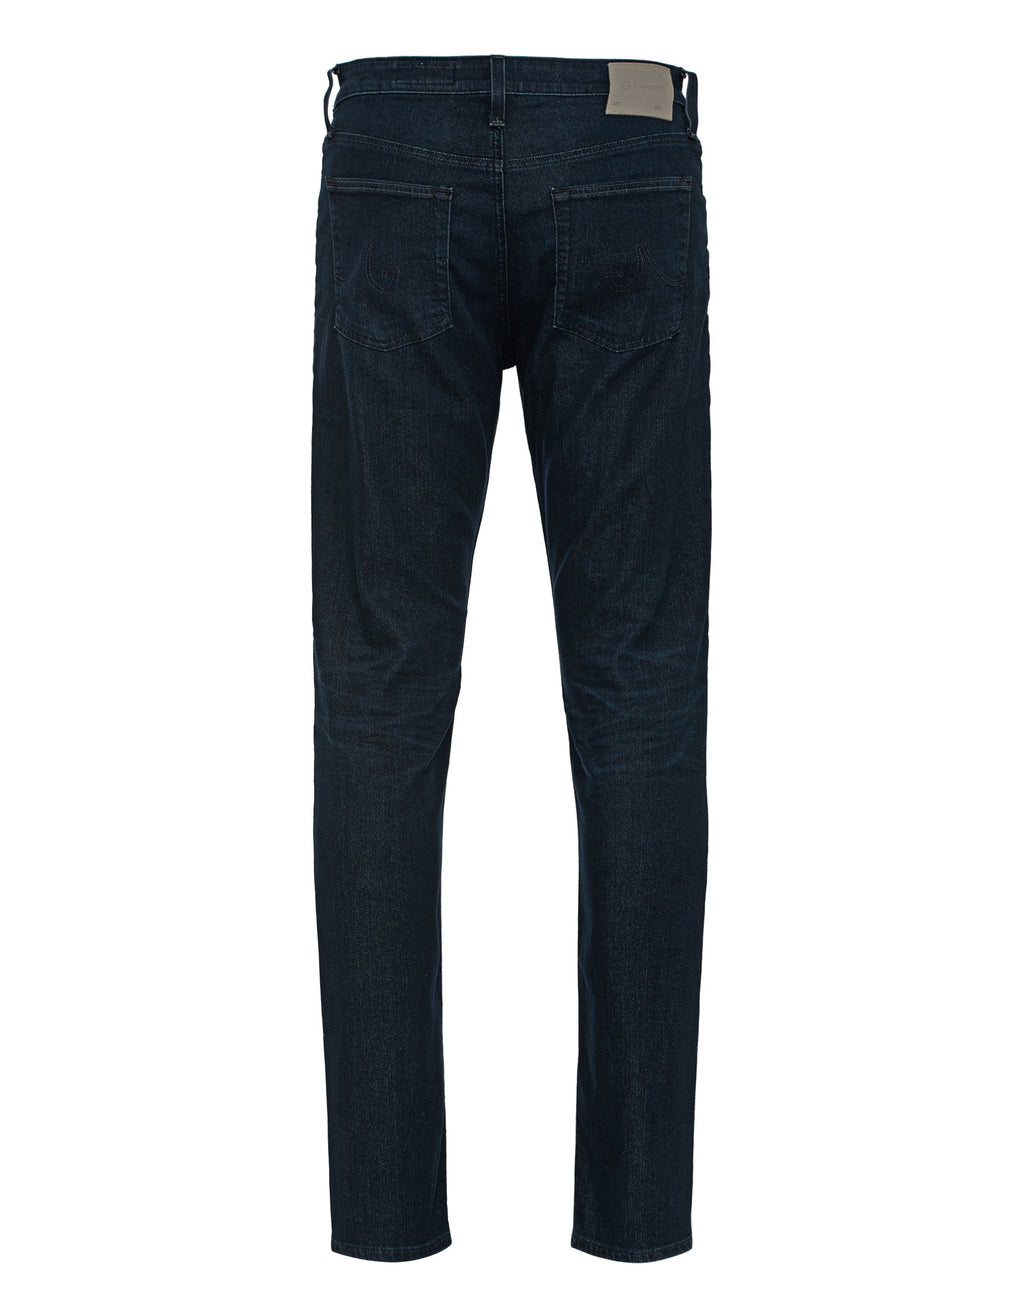 AG Jeans-OUTLET-SALE-SLIM SKINNY-Hosen-ARCHIVIST